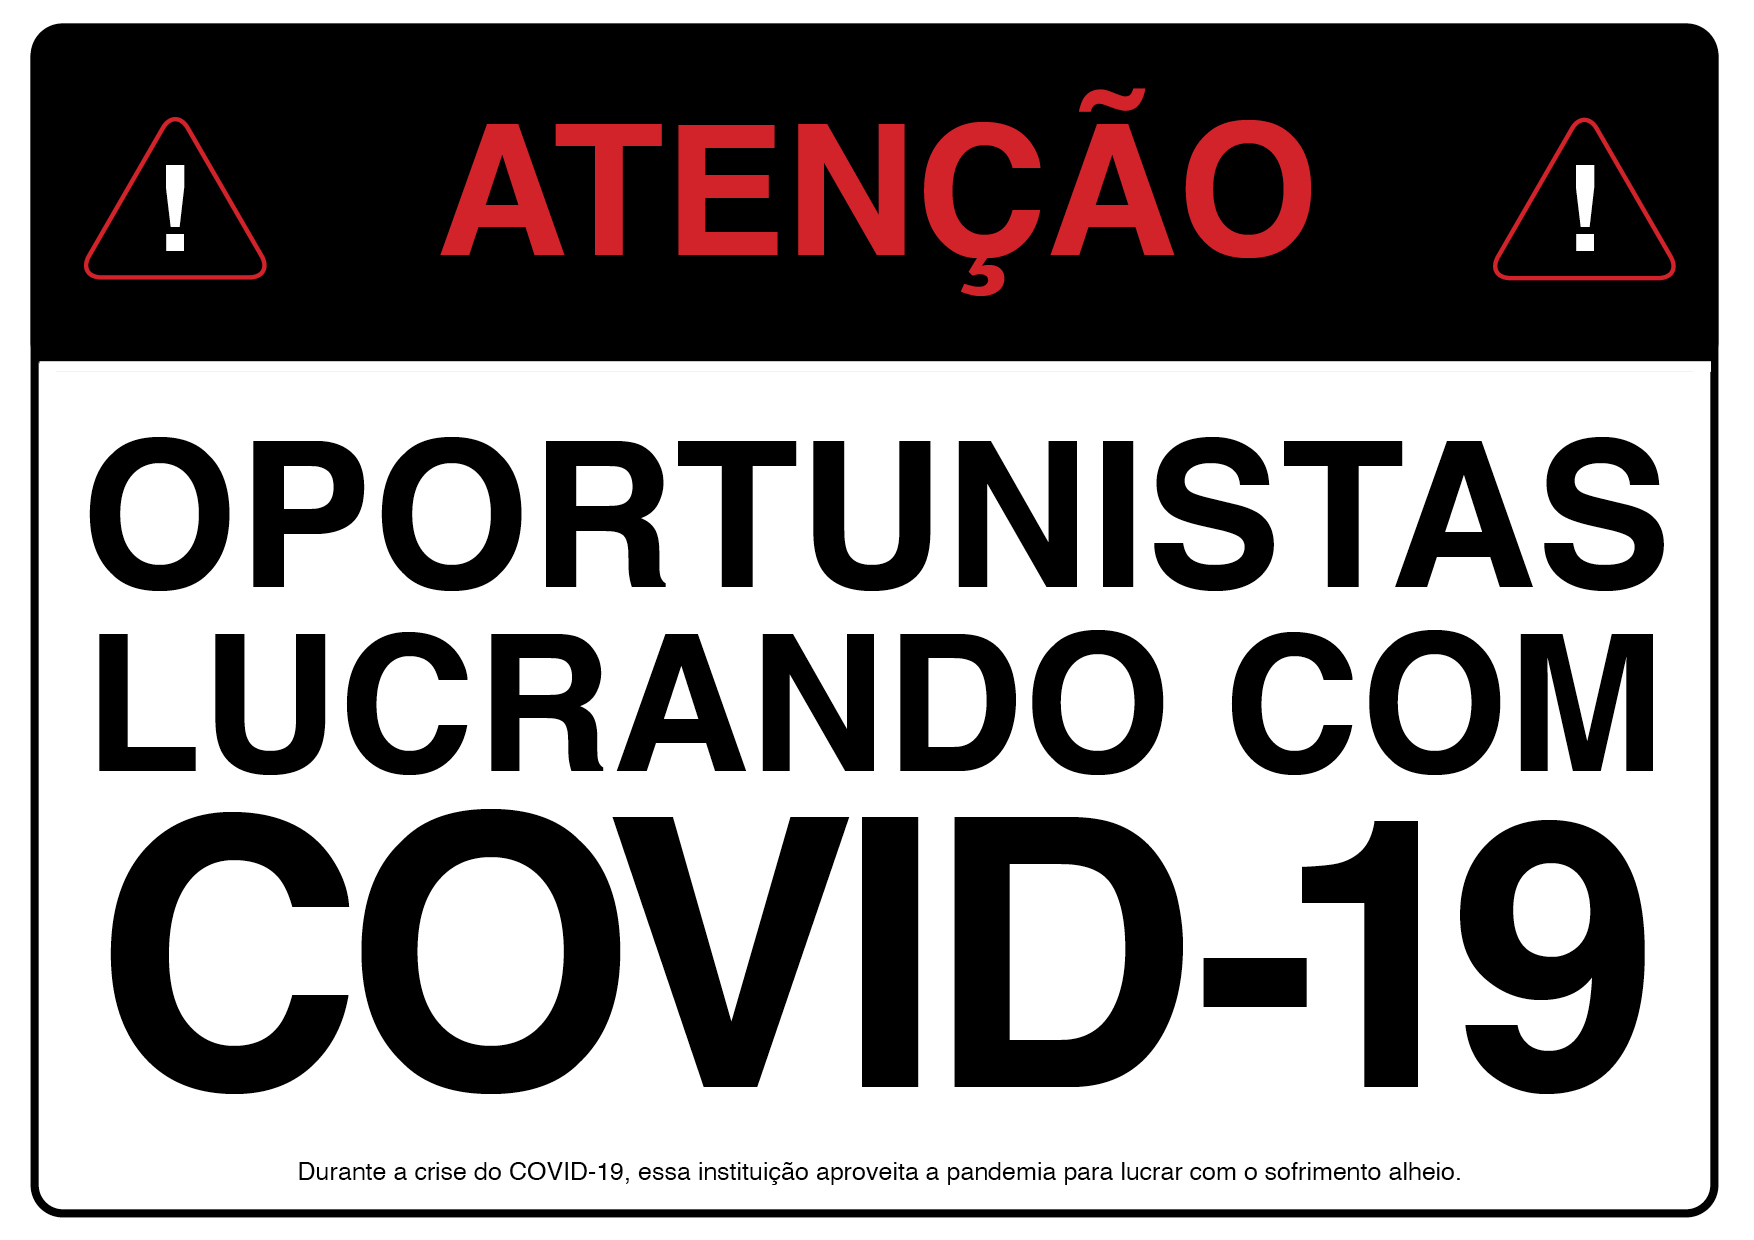 Photo of ‘Atenção: Oportunistas Lucrando Com Covid-19’ front side